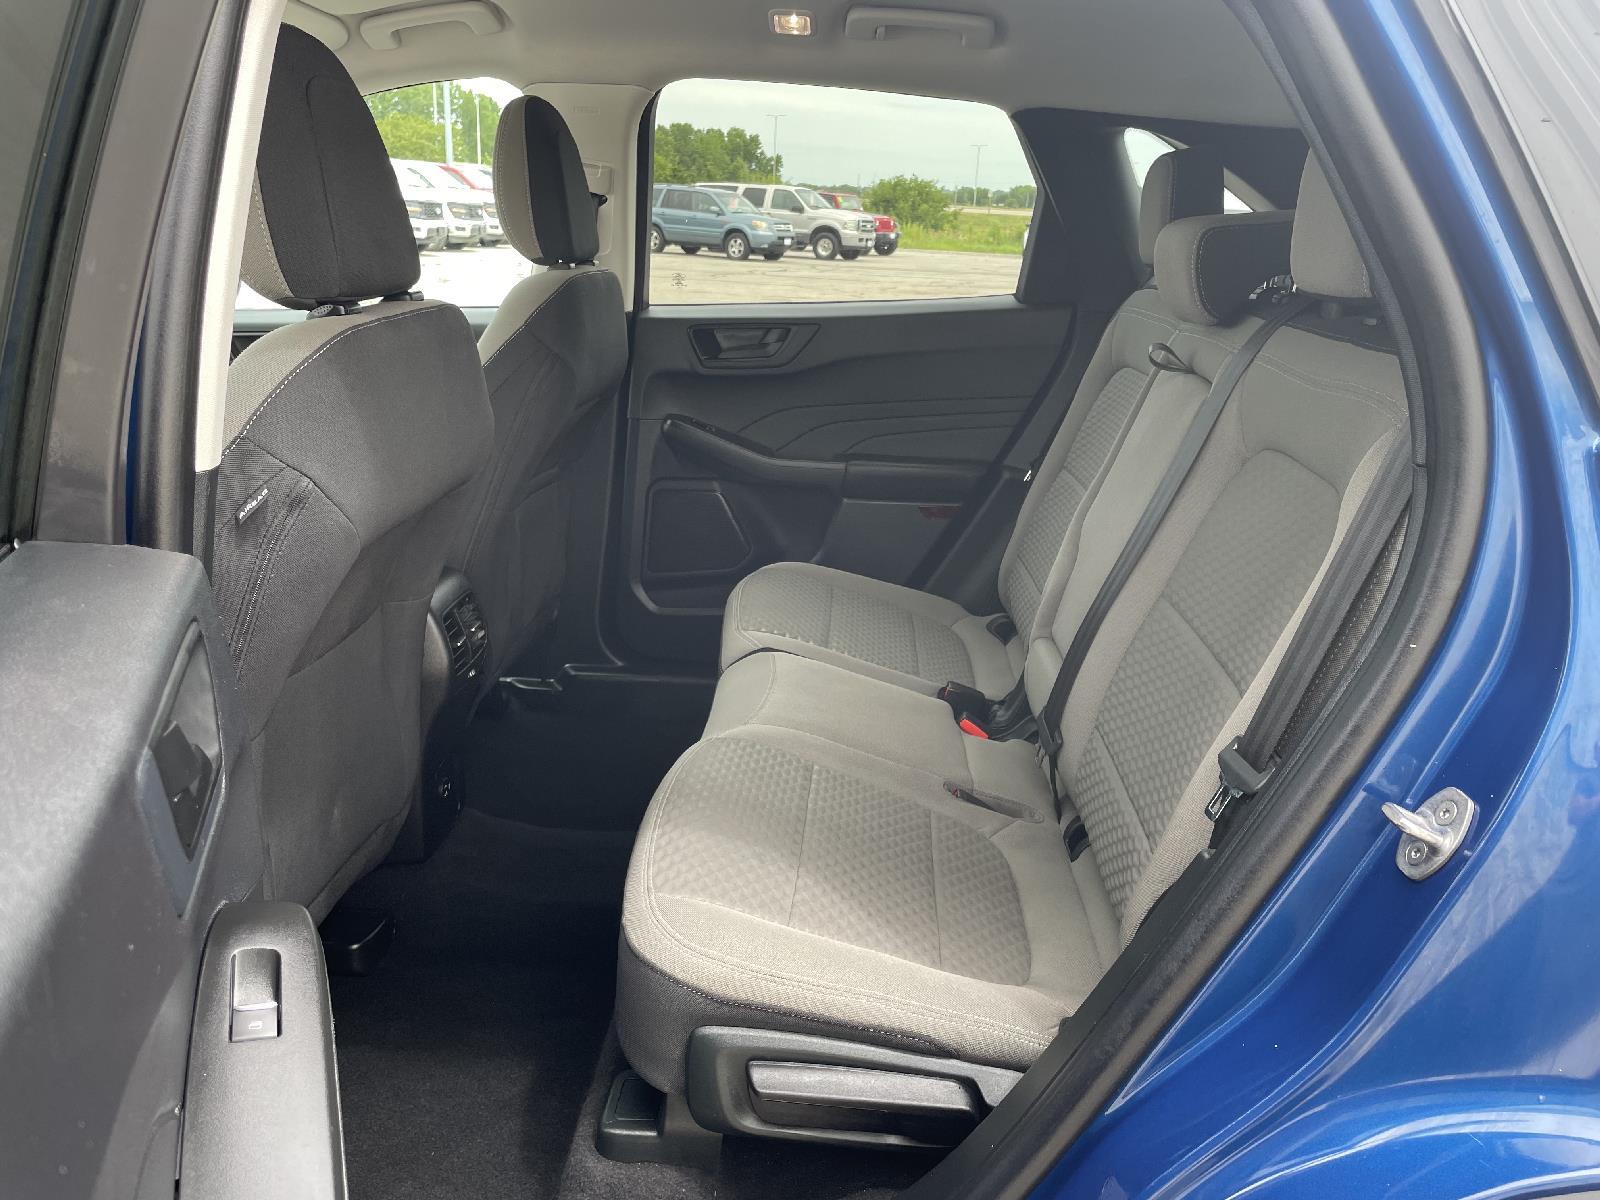 Used 2022 Ford Escape SE Hybrid SUV for sale in Lincoln NE